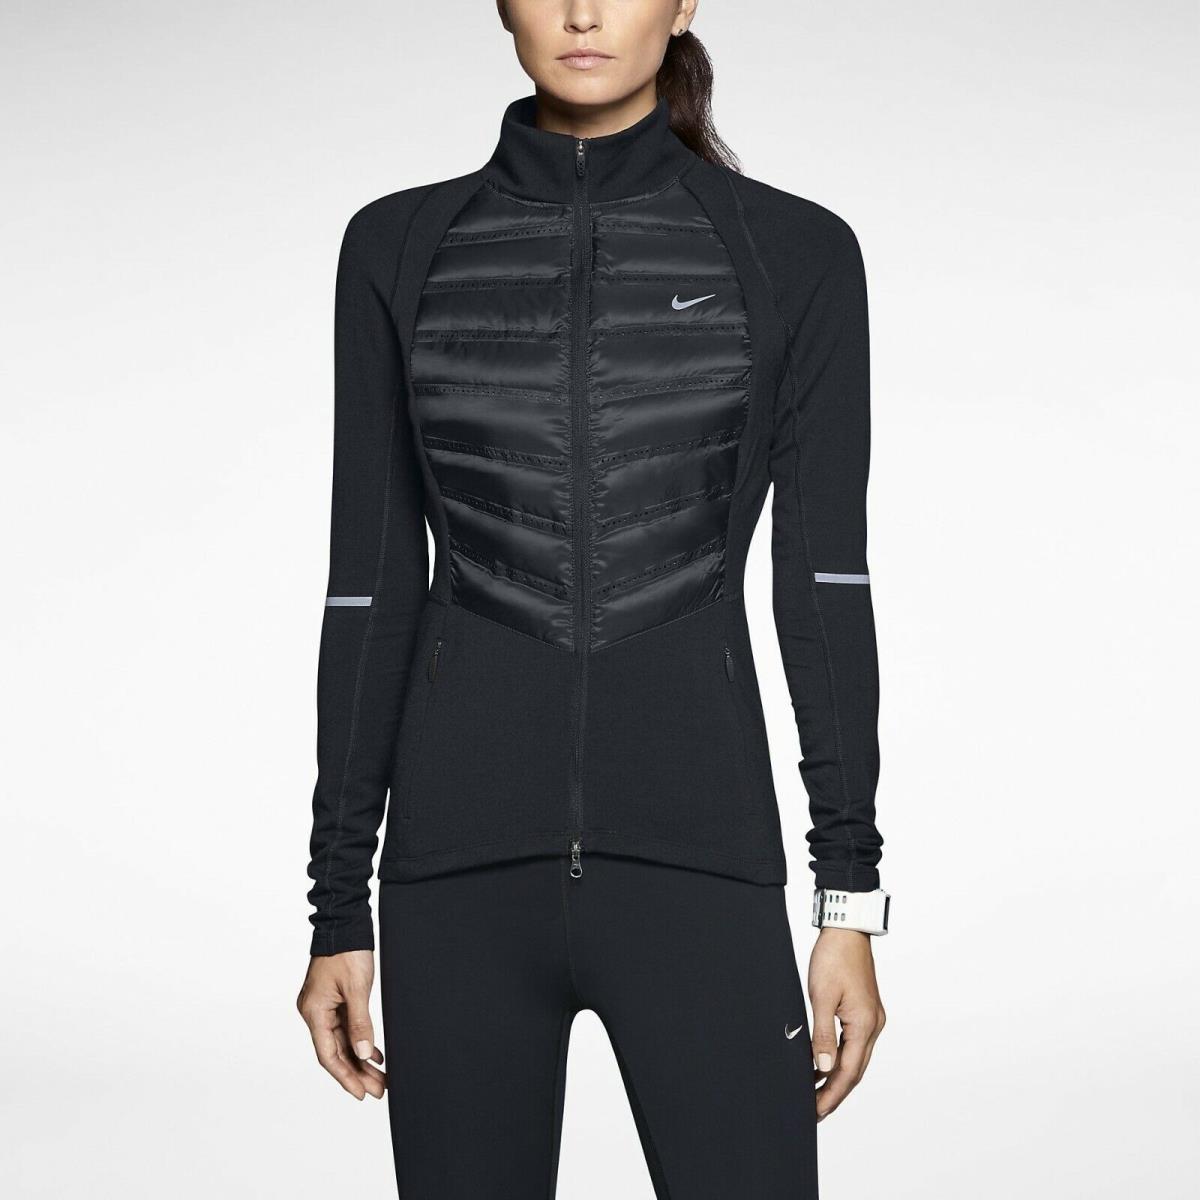 Nike Women`s Aeroloft Hybrid Goose Down Running Jacket Size Large Retail